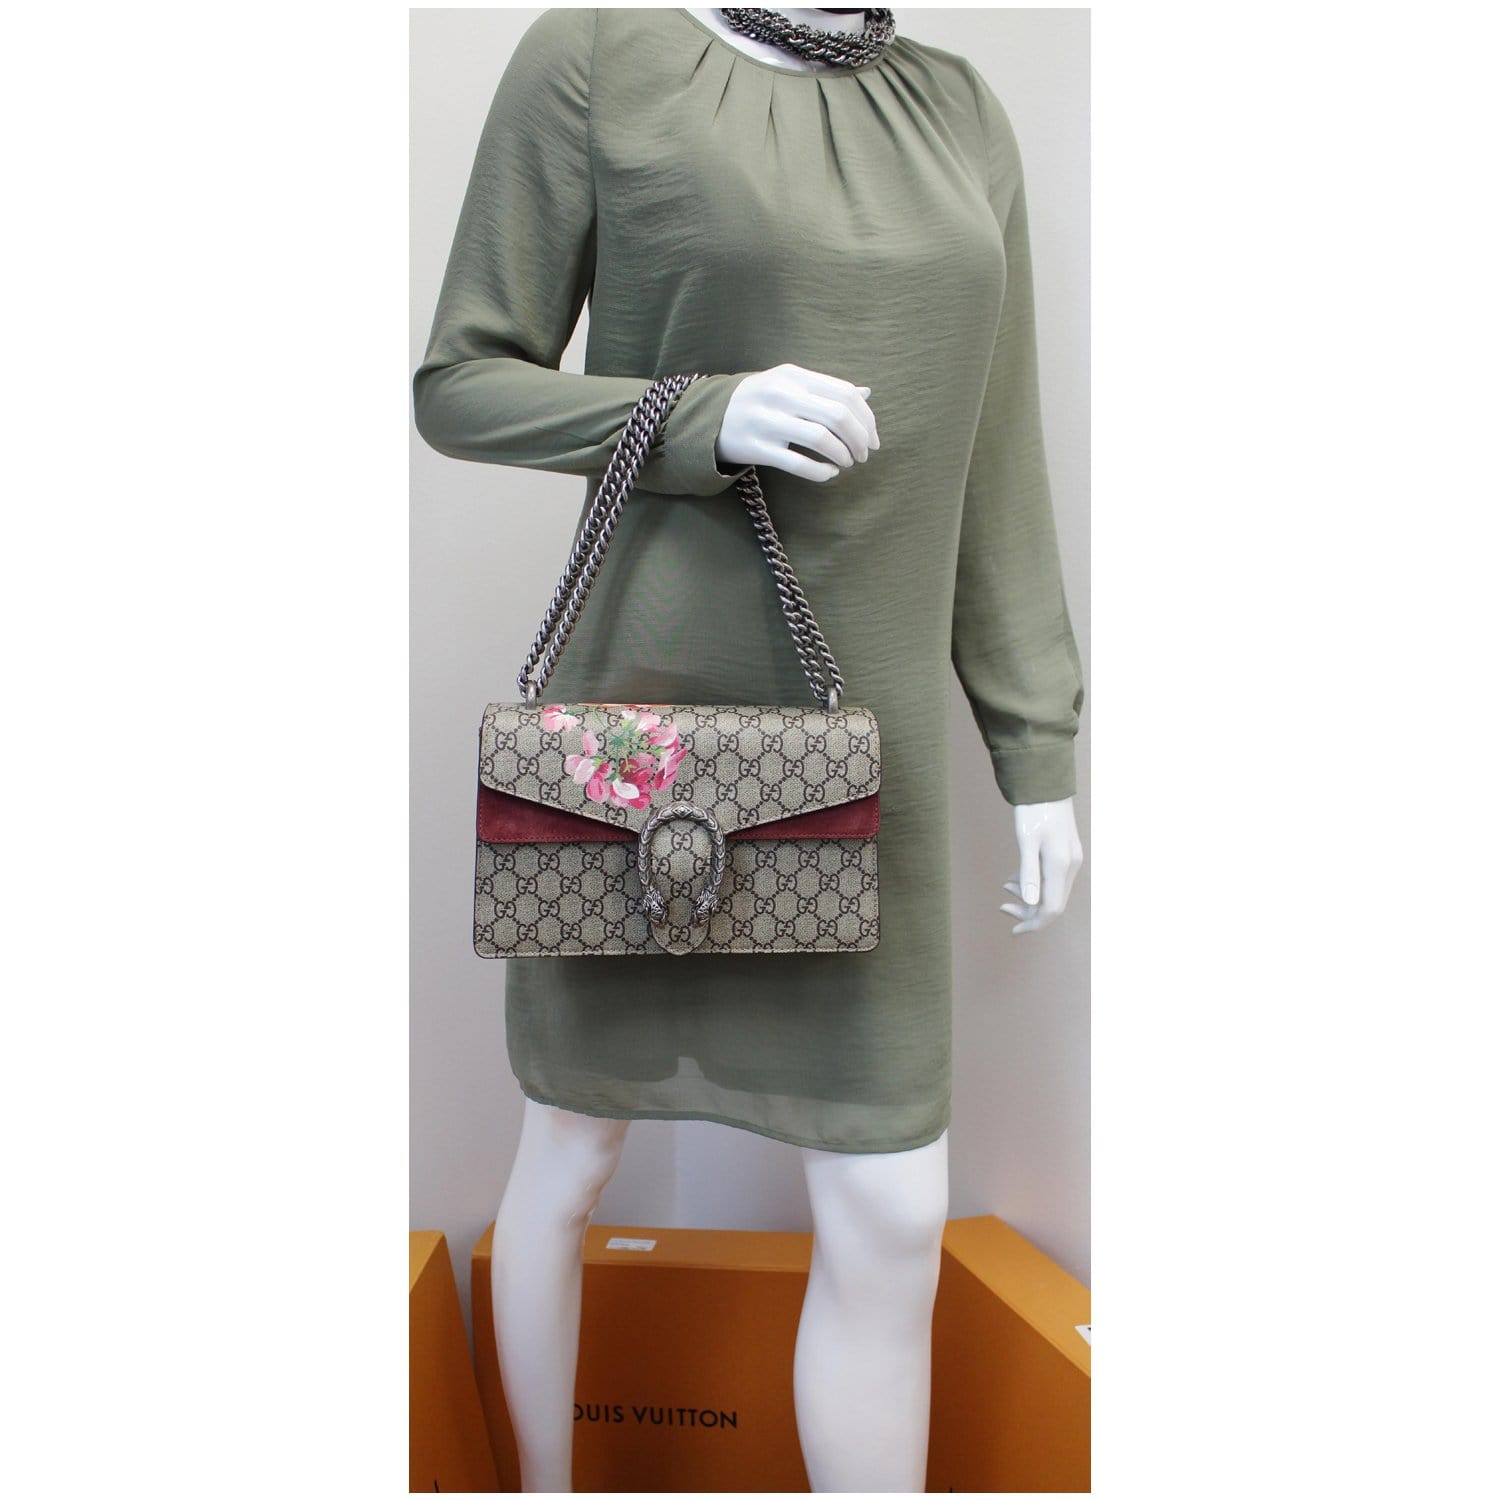 Gucci, Dionysus GG Blooms mini bag.